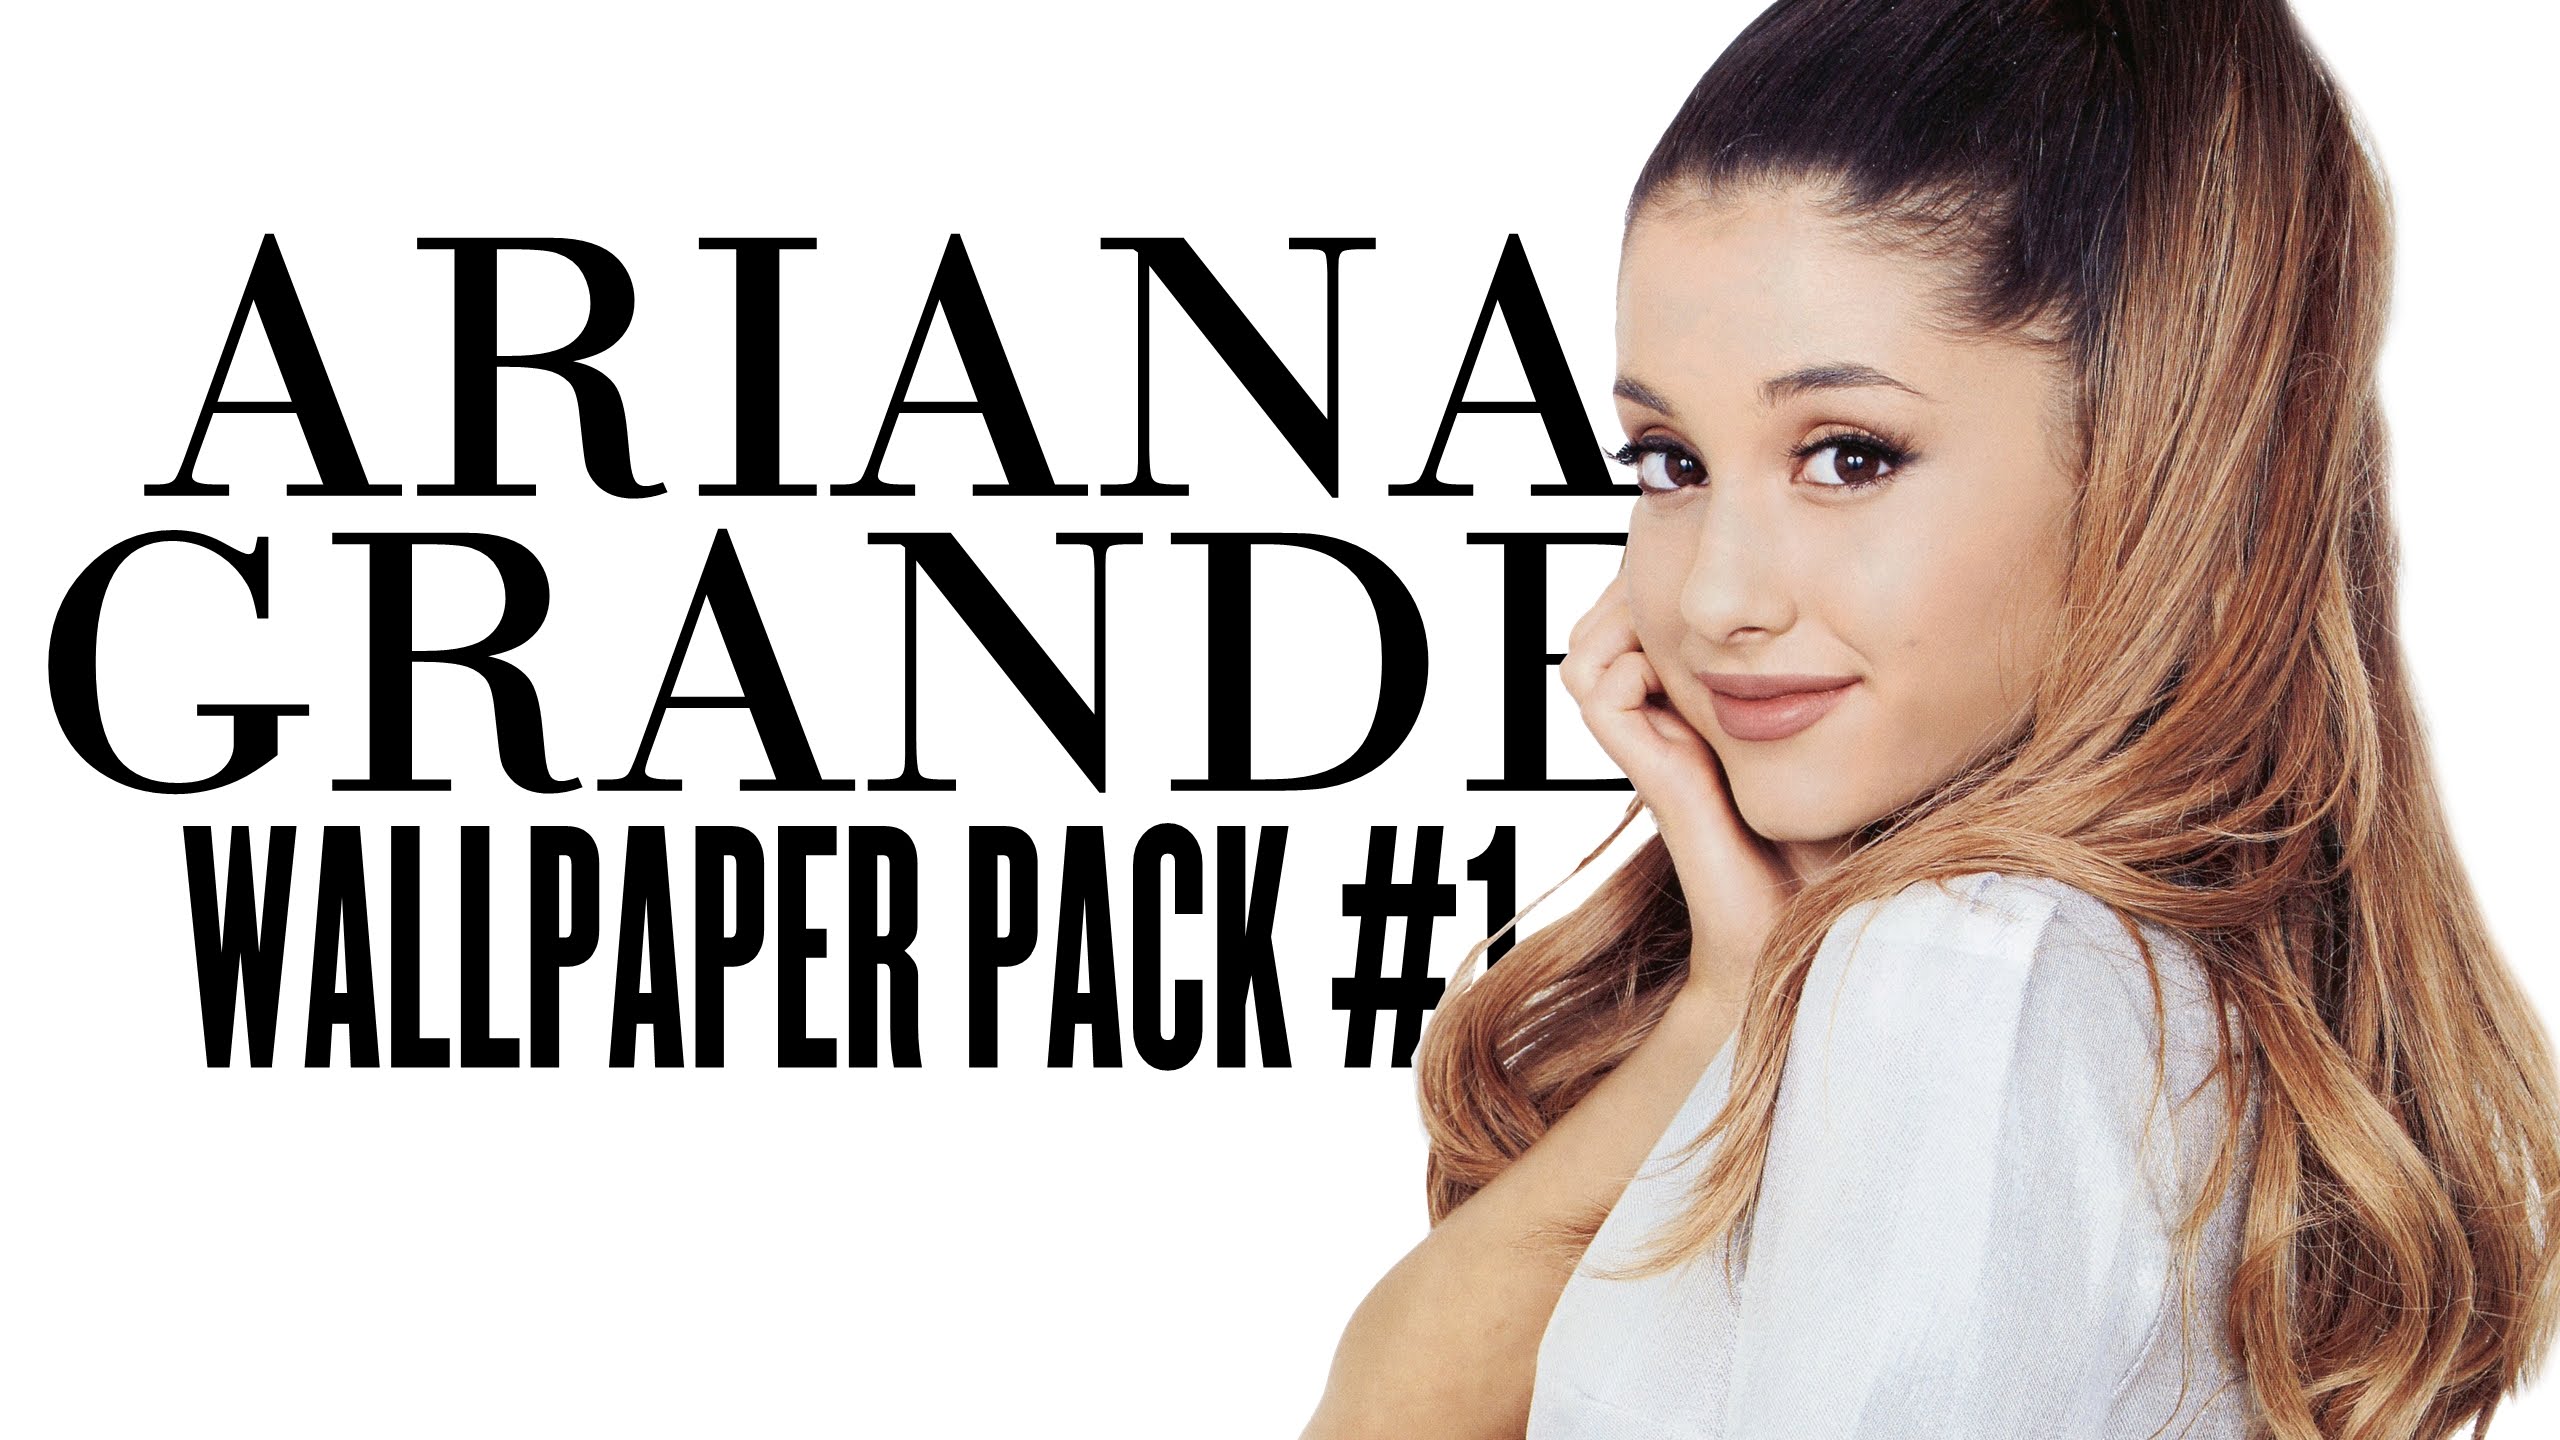 Ariana Grande Wallpaper 5 Pack Digital Download 